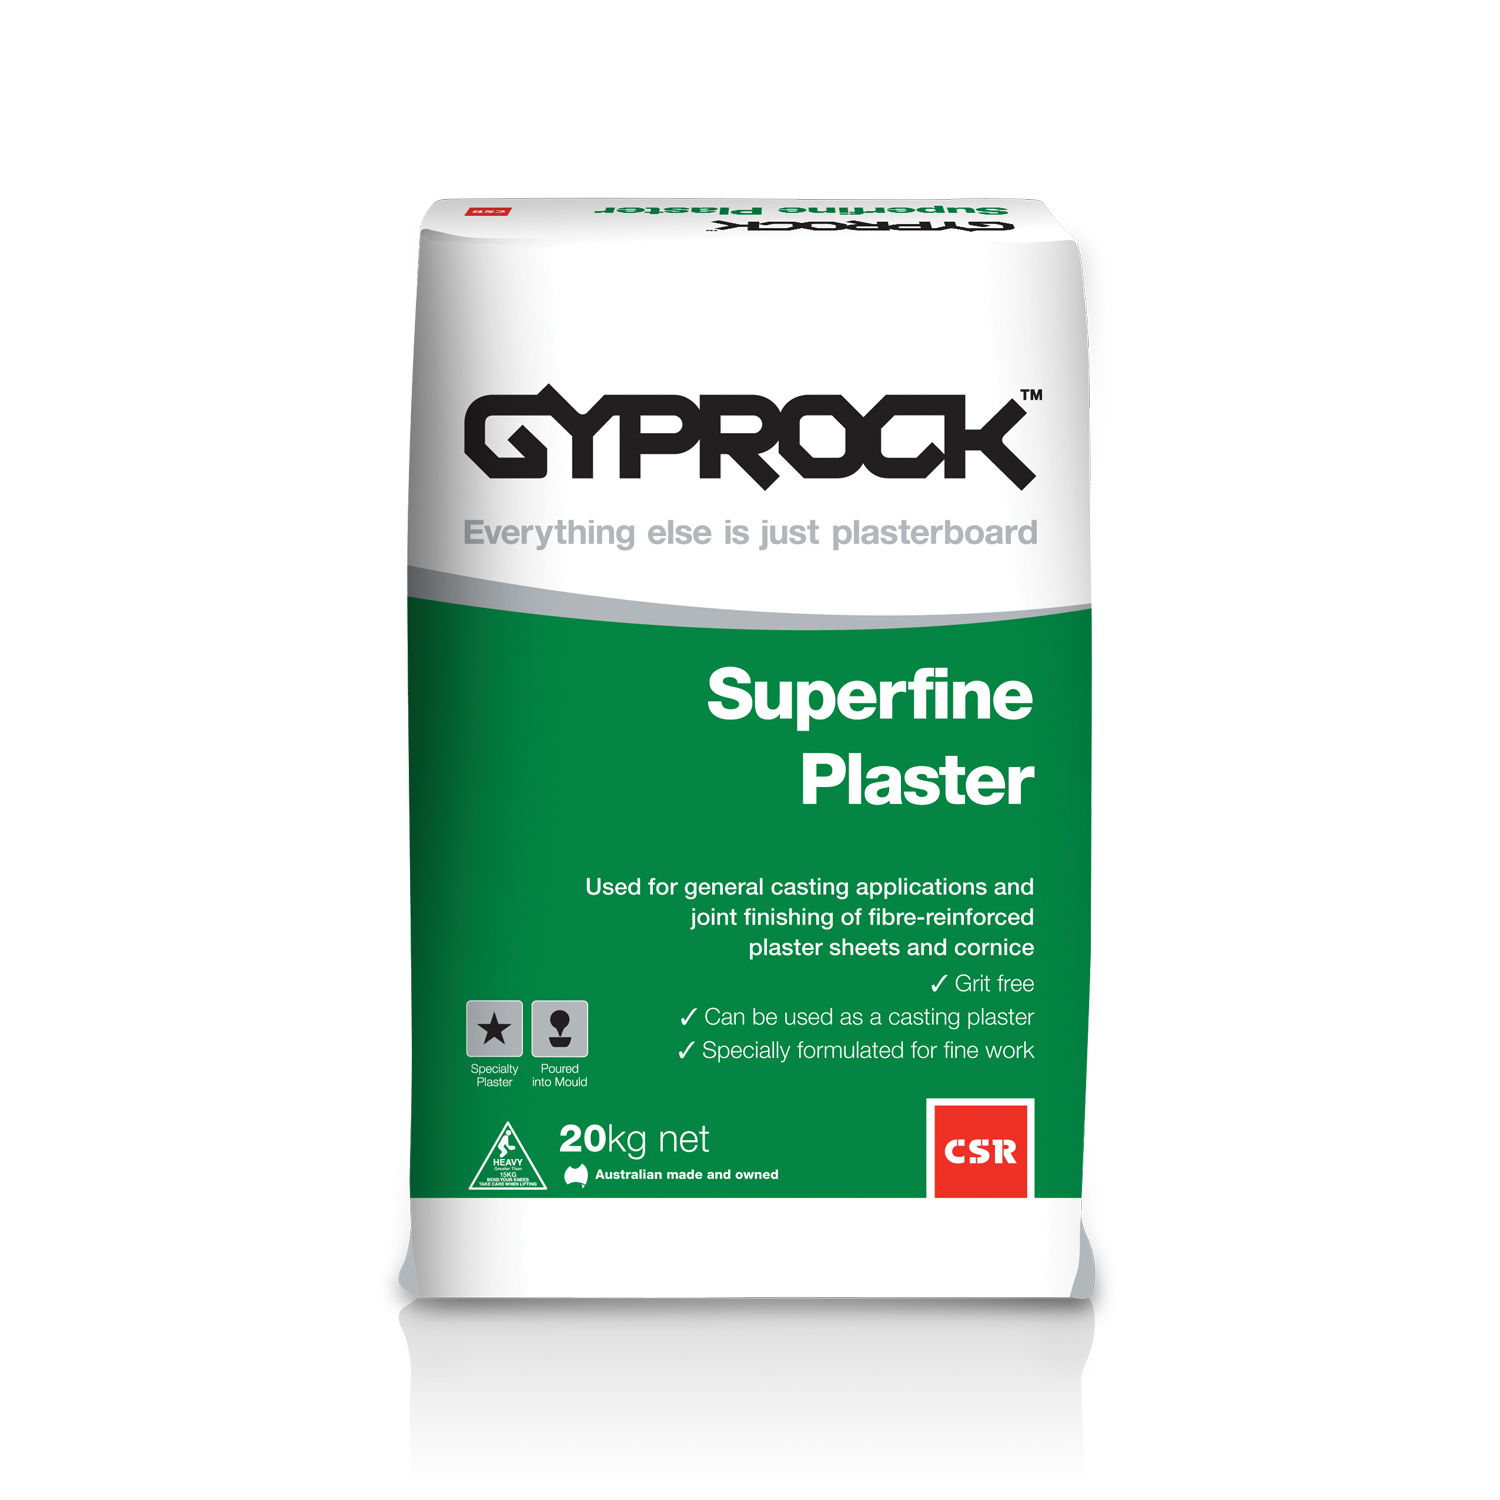 Gyprock® Superfine Plaster